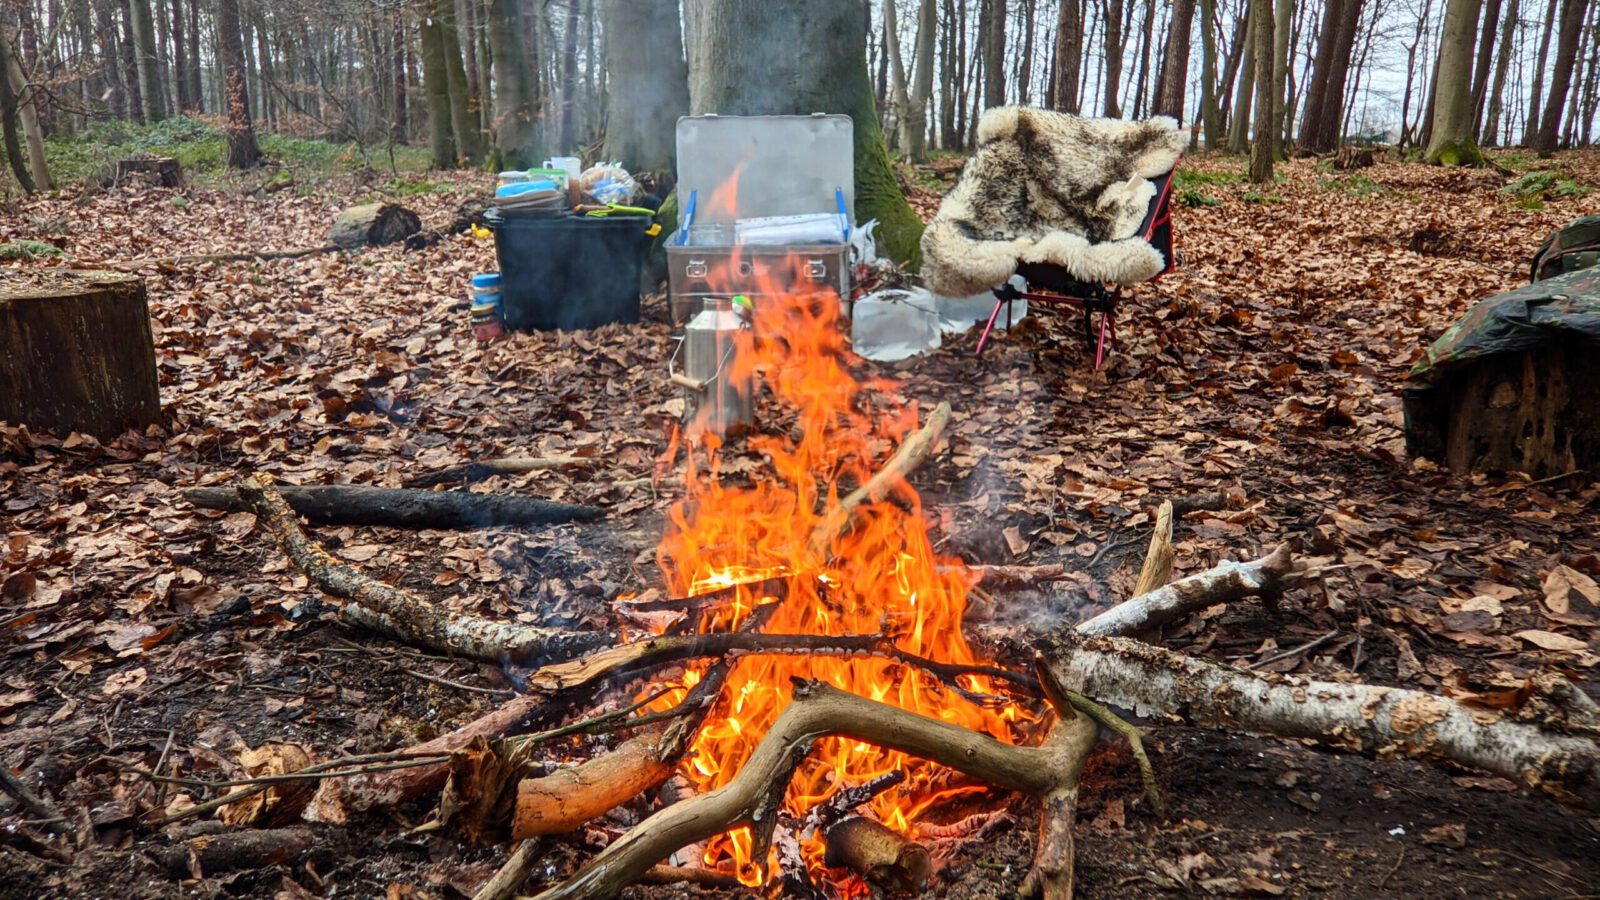 alt=“Prasselndes Lagerfeuer bei einem Survivalkurs im Herbstwald″